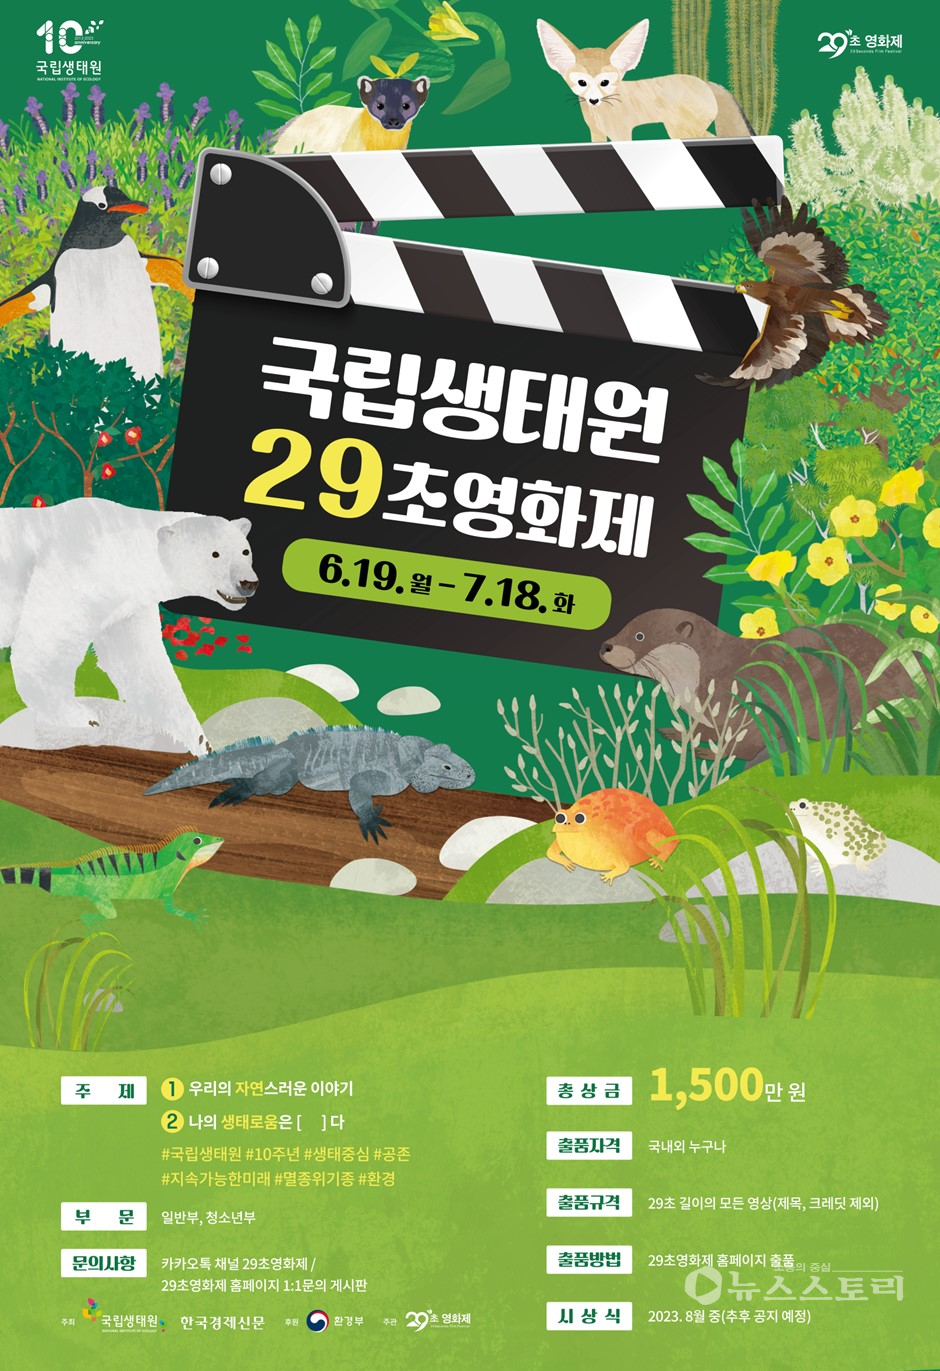 ‘국립생태원 29초영화제’ 포스터. ⓒ국립생태원